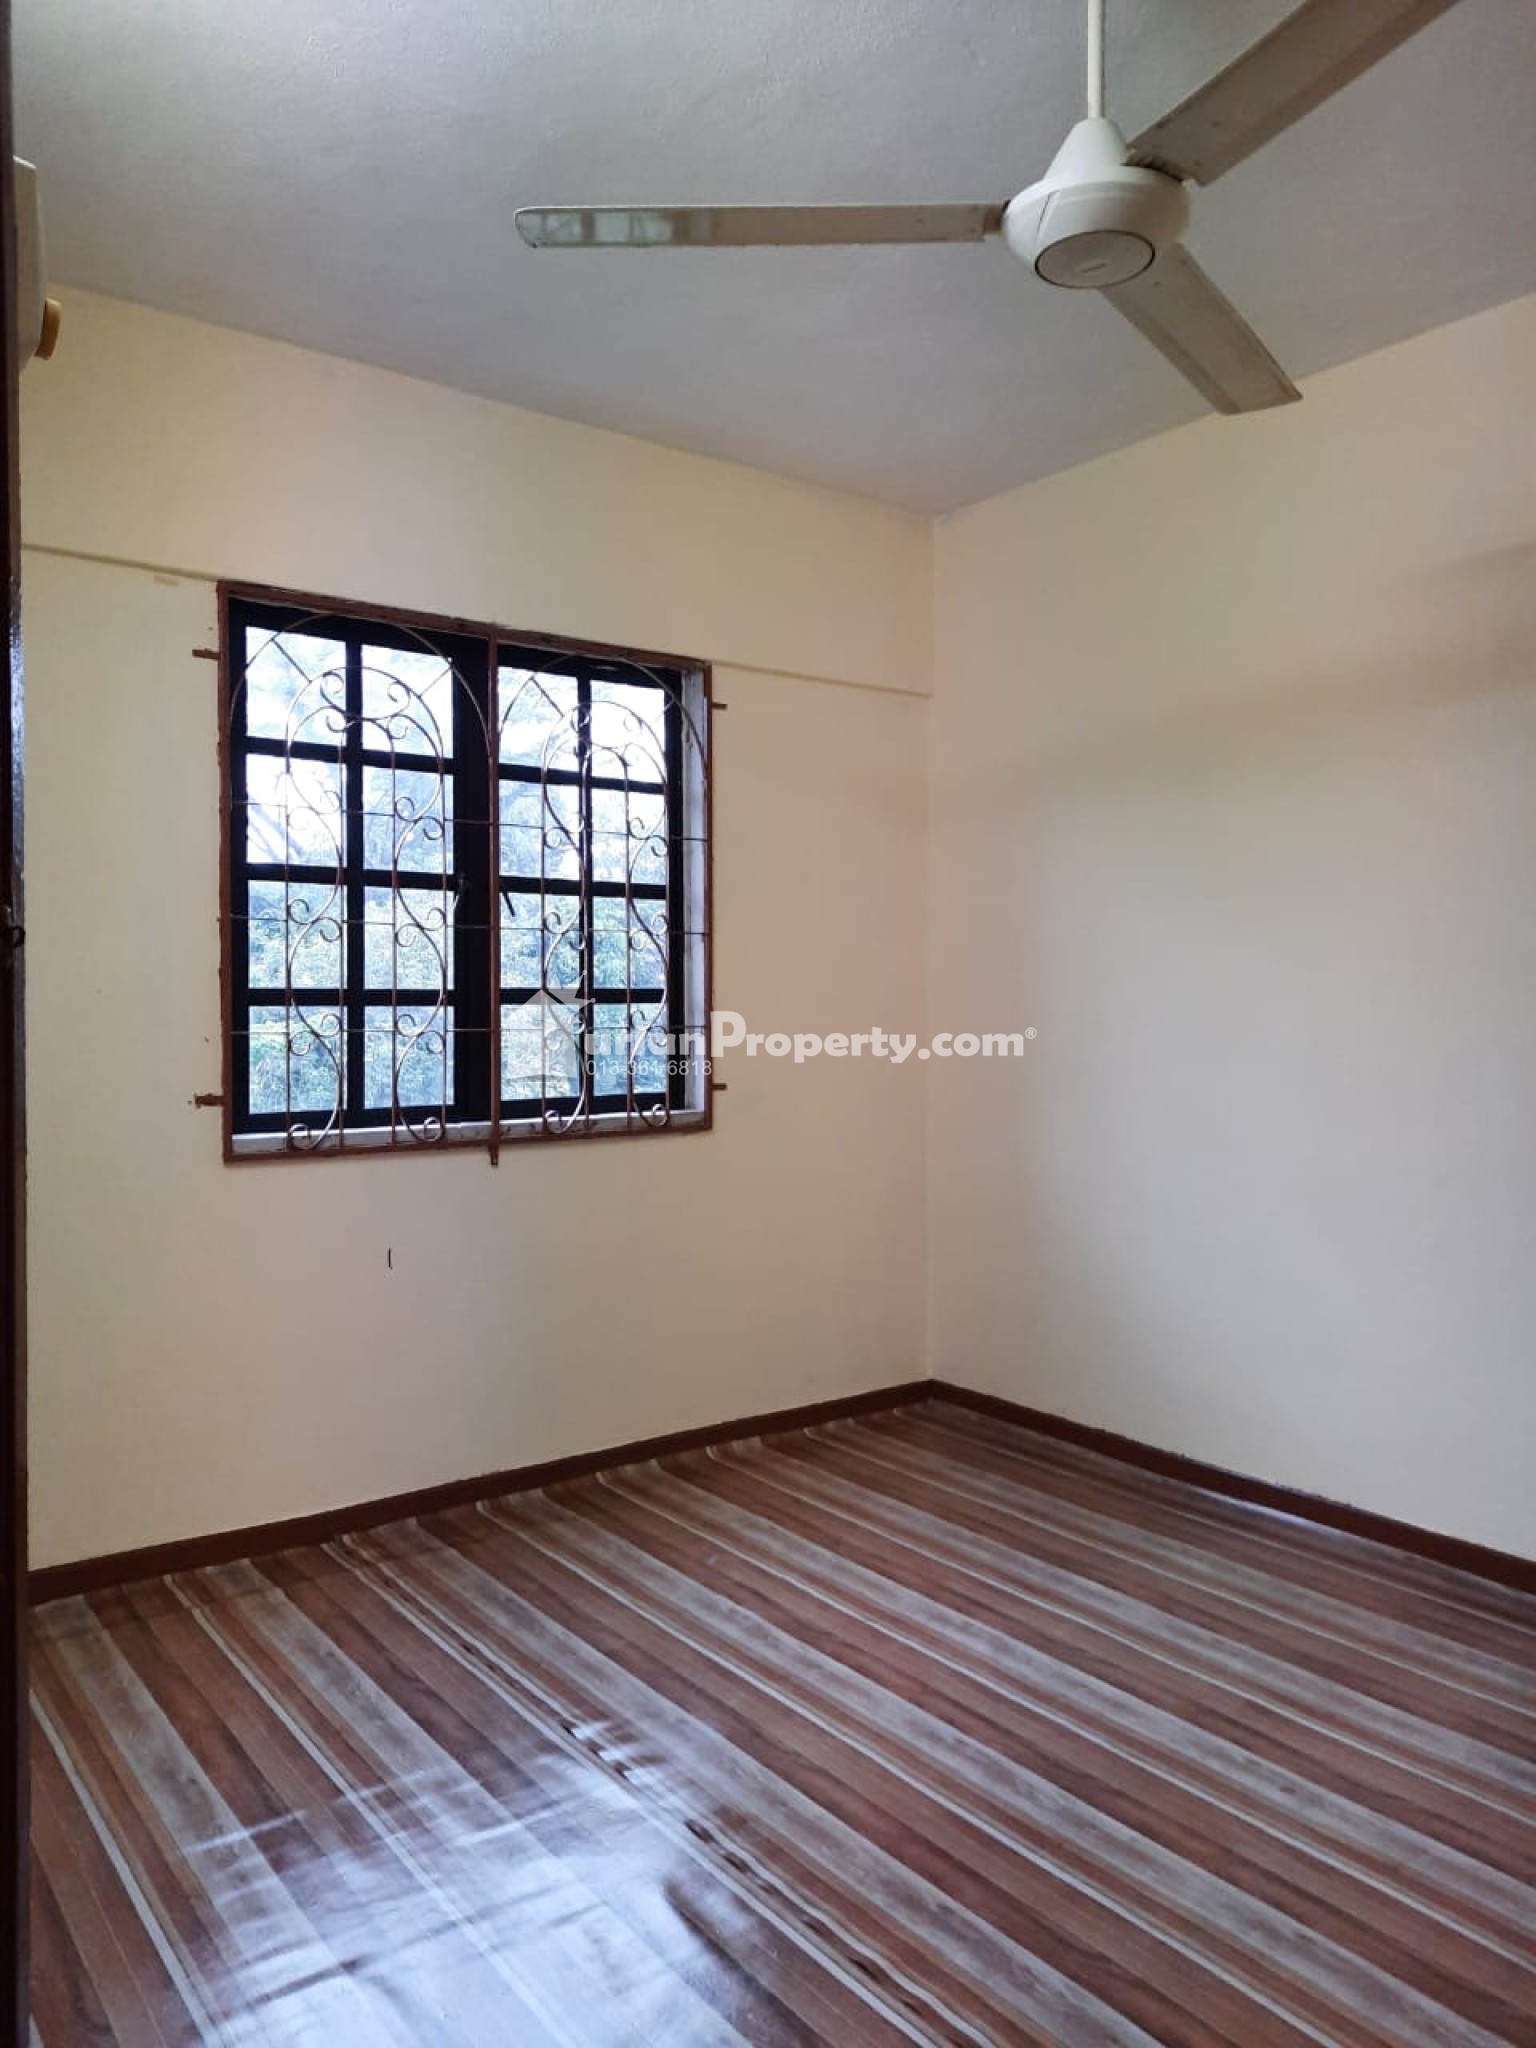 Apartment For Sale at Taman Melati